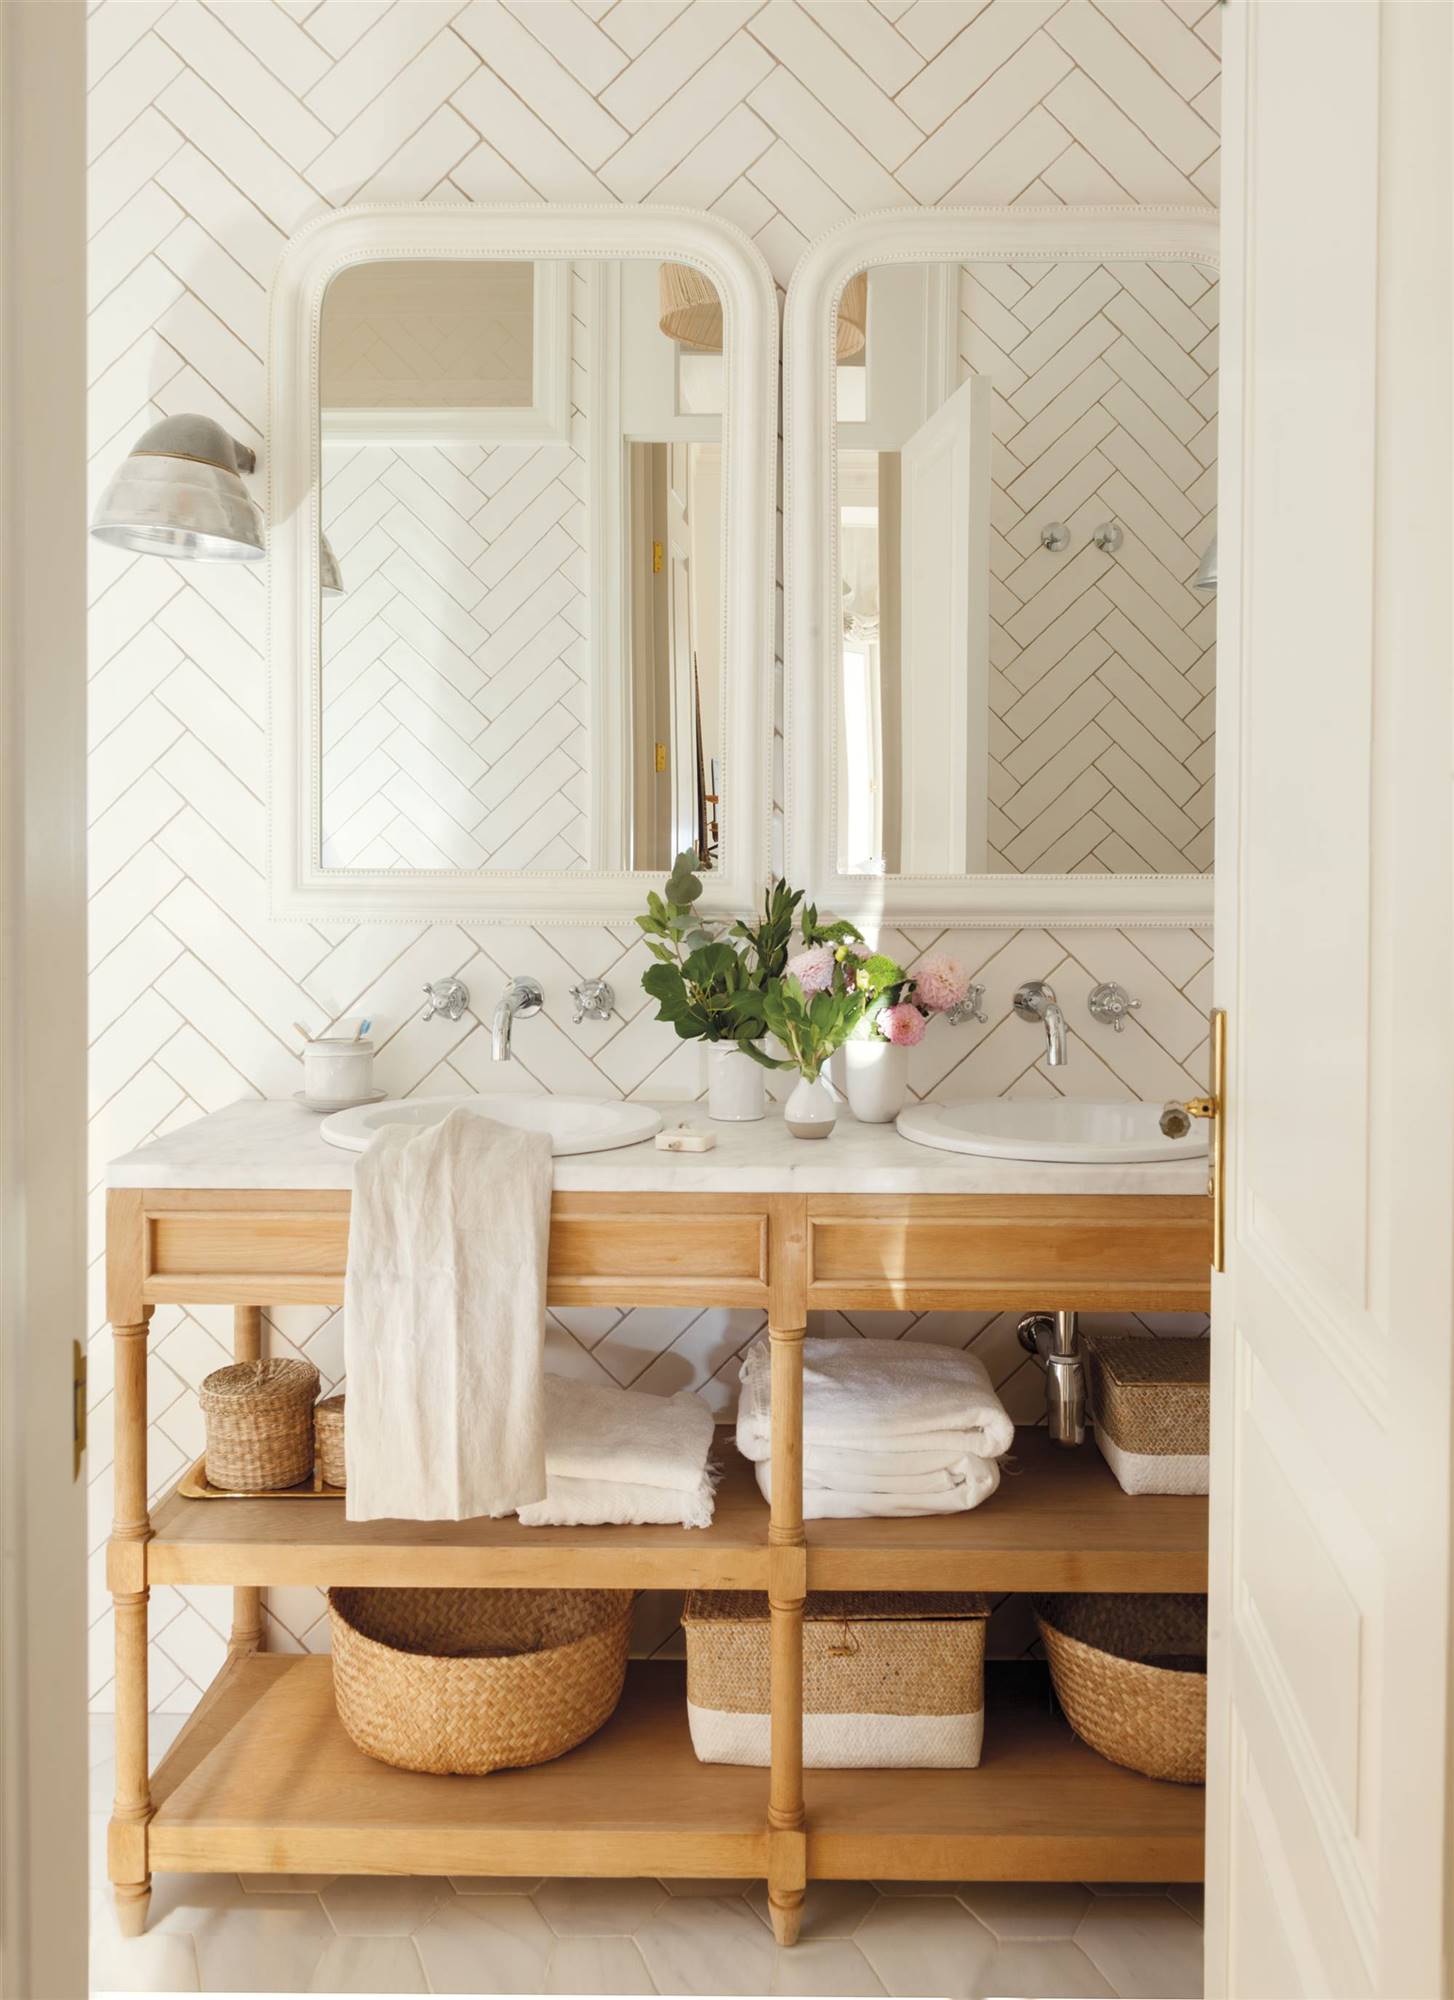 Baño con azulejos tipo metro en diagonal, mueble de madera y espejos con marcos blancos. 